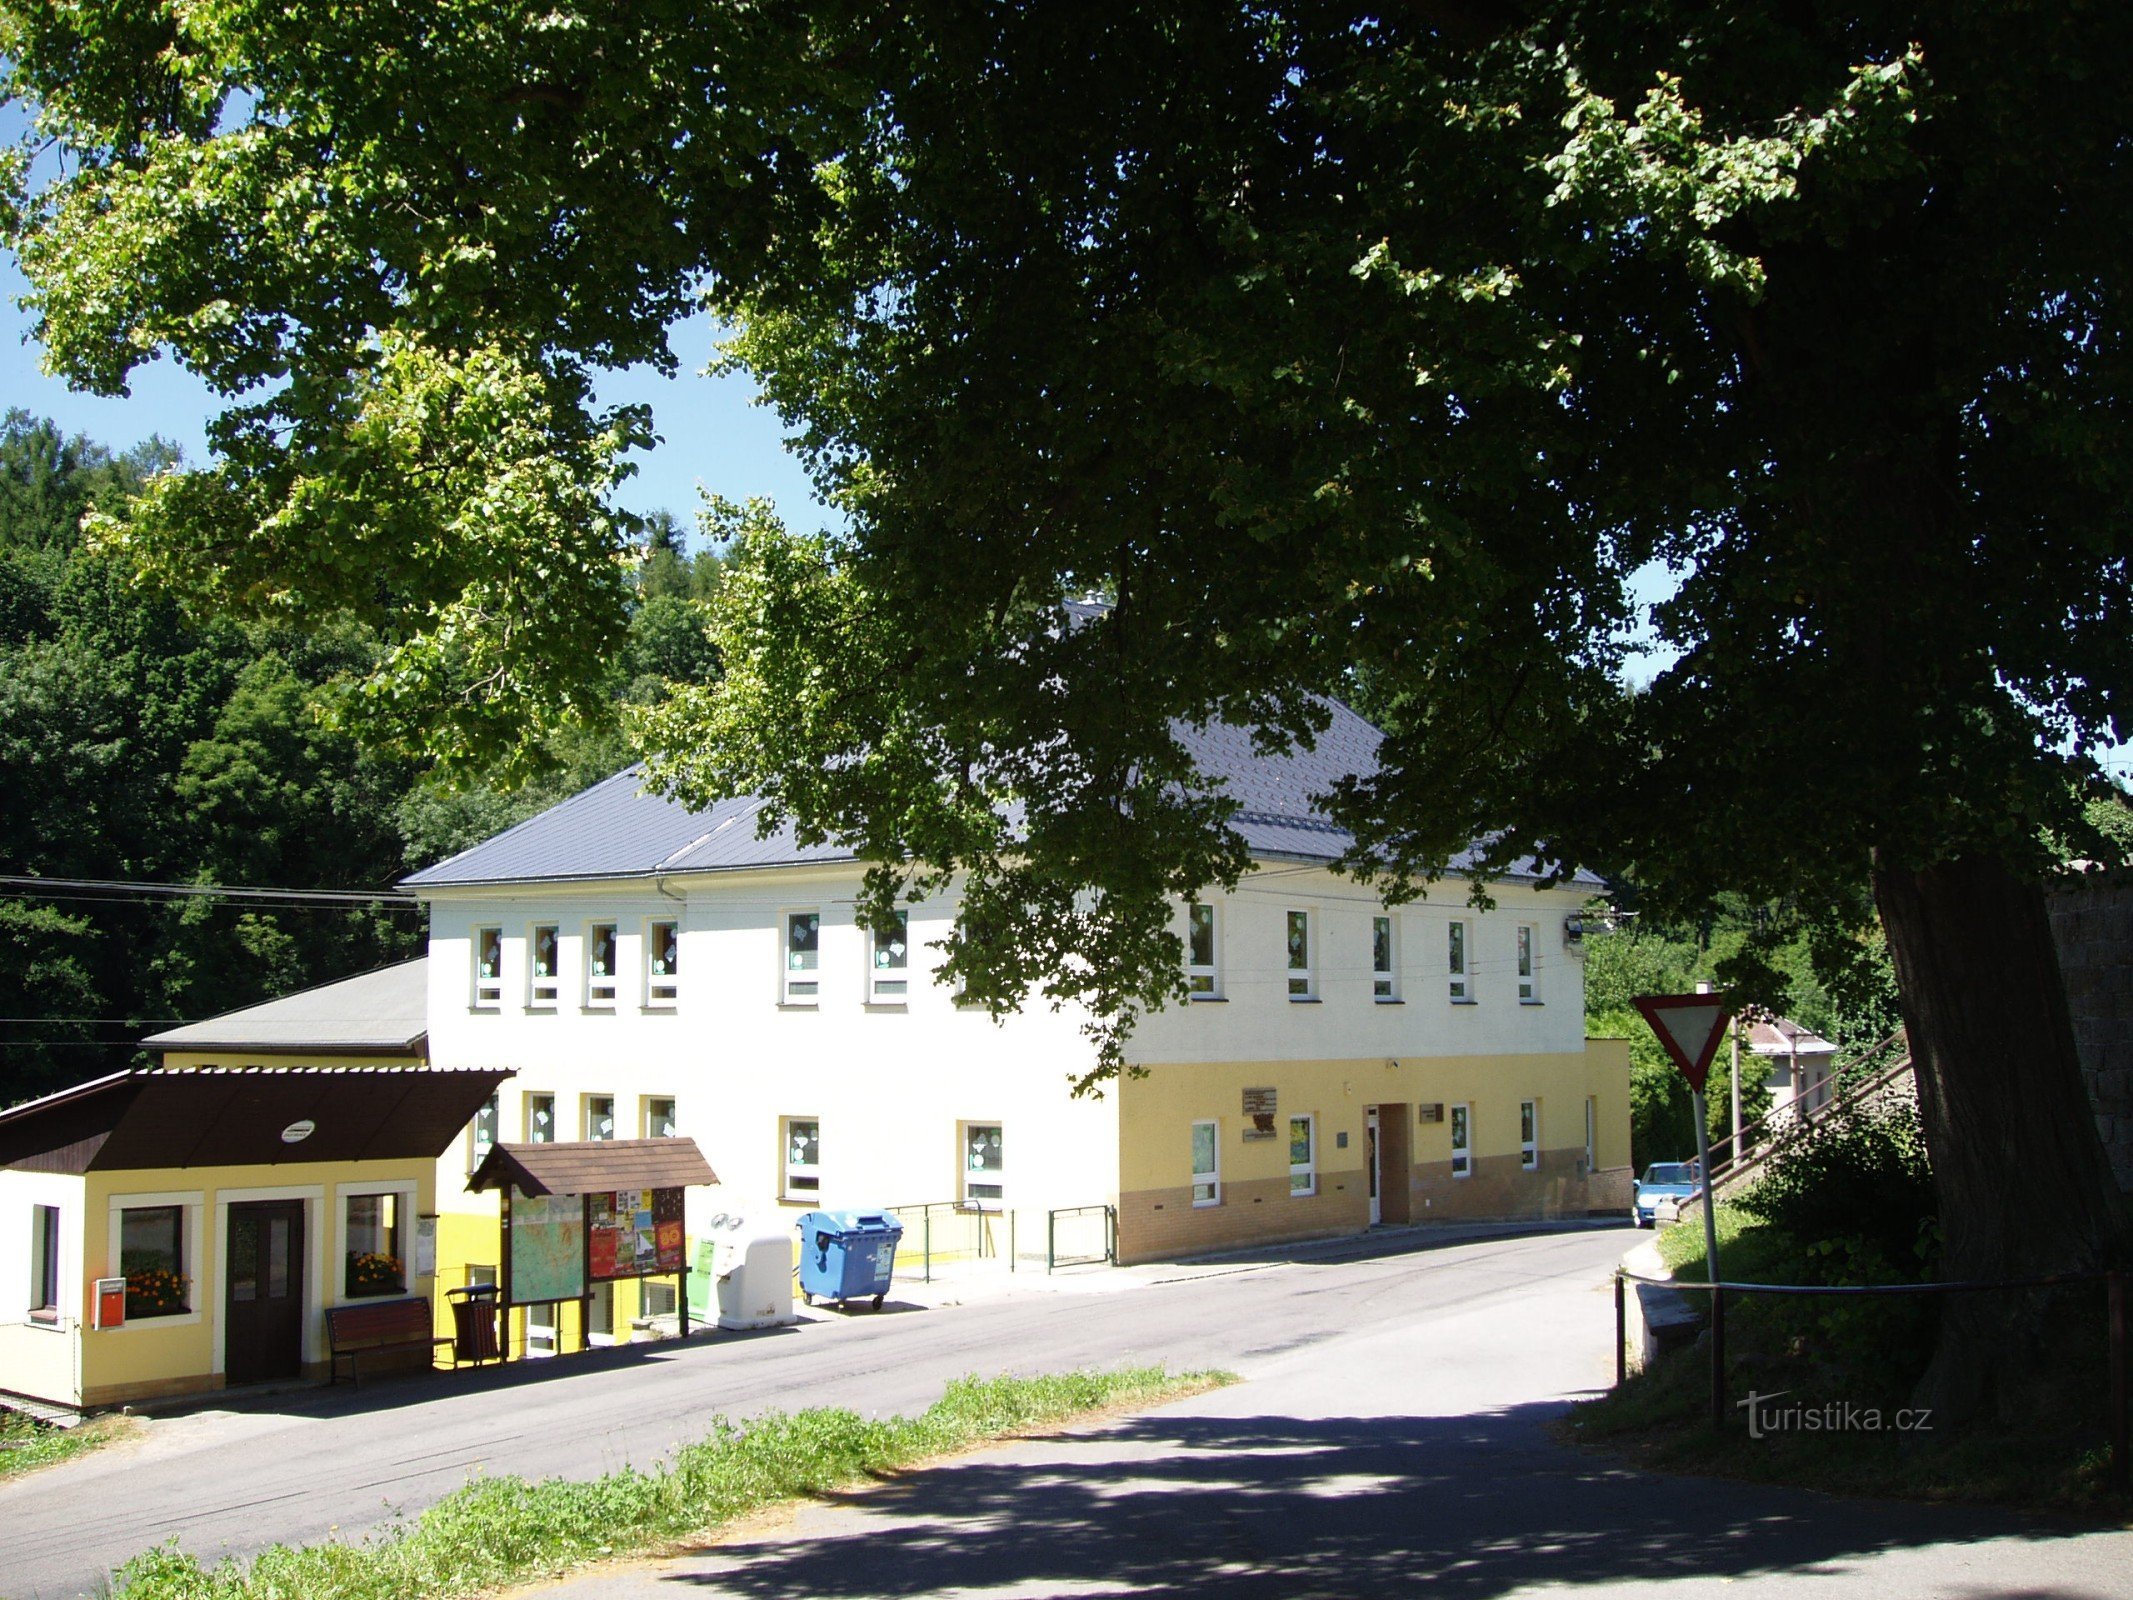 École Nekorská avec une plaque commémorative